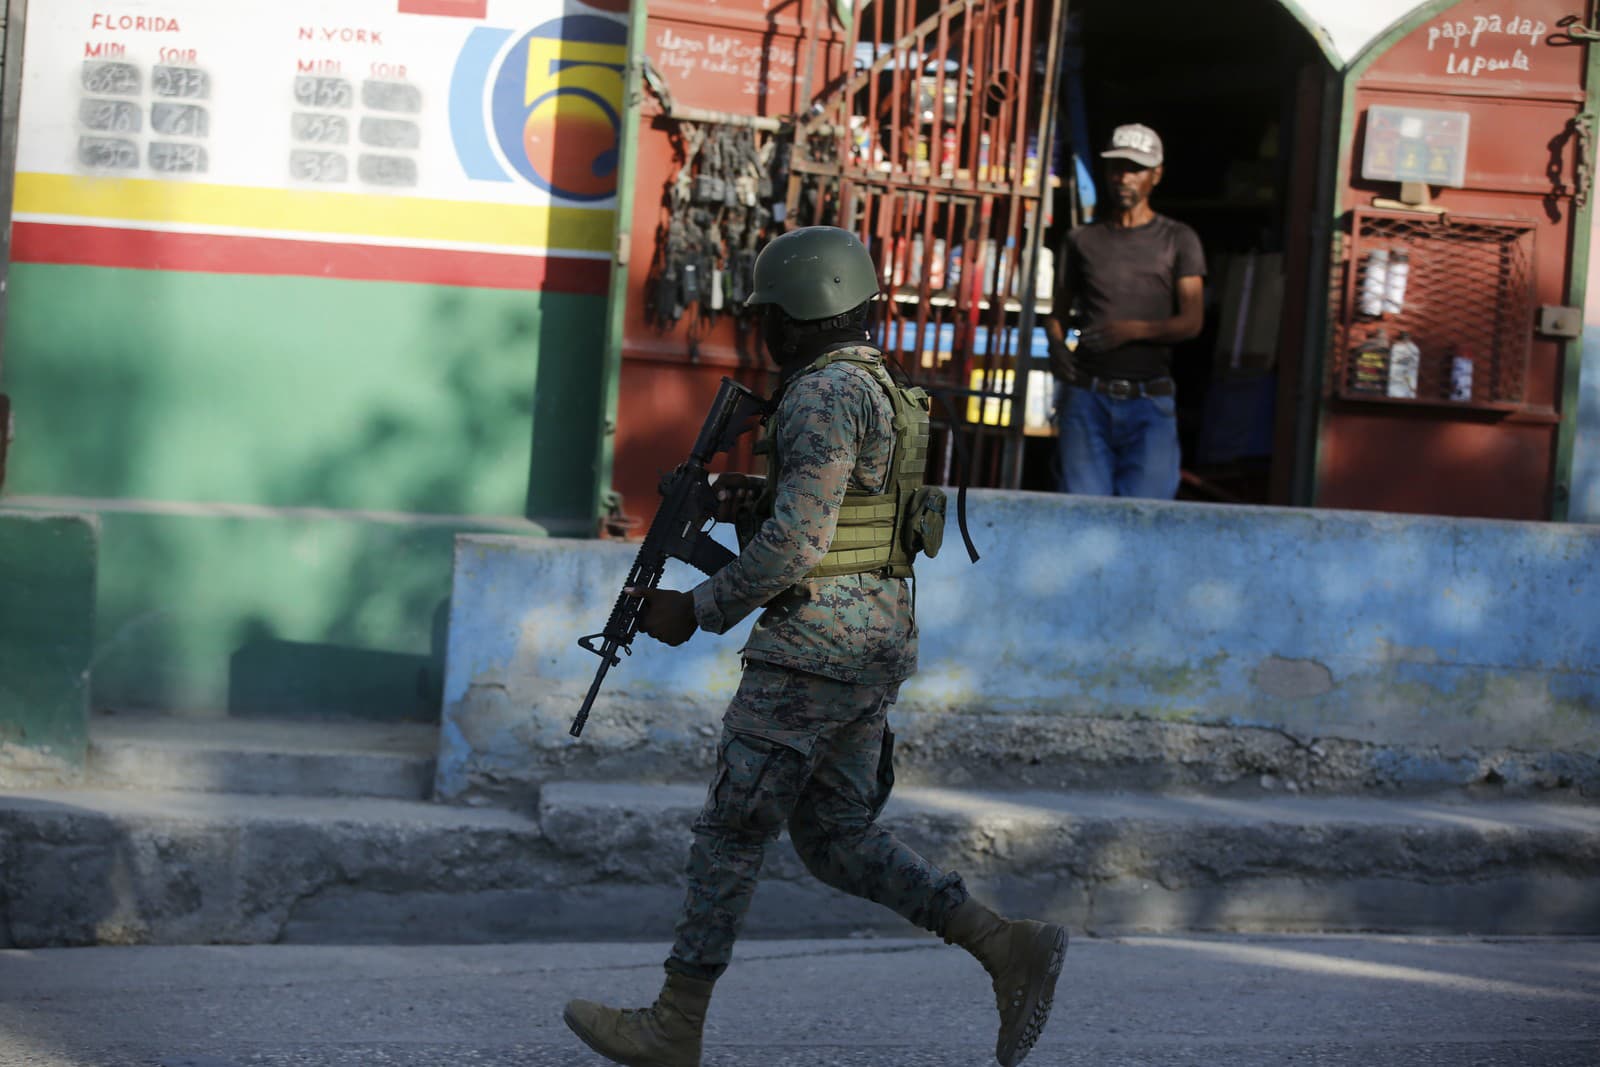 Vojak hliadkuje na okraji medzinárodného letiska v Port-au-Prince na Haiti.